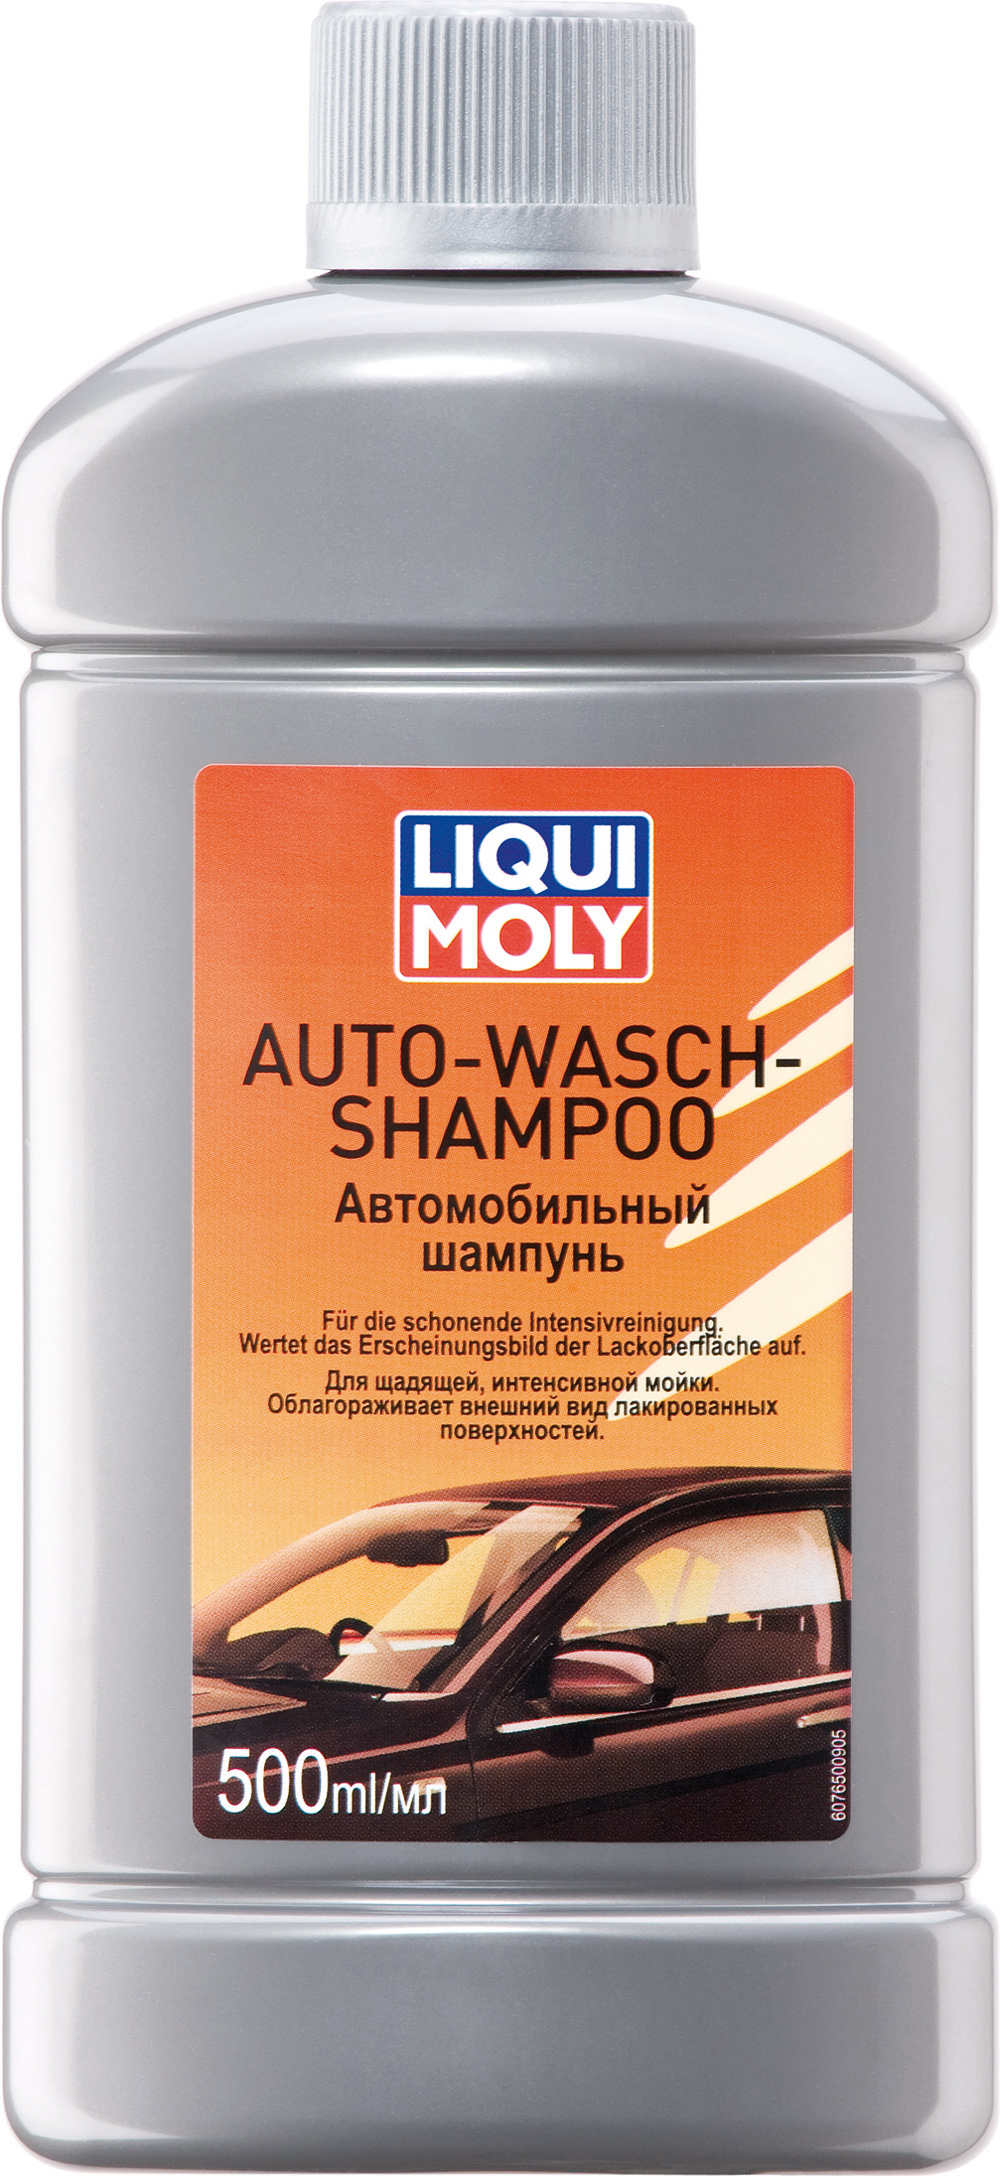 Автомобильный шампунь LIQUI MOLY Auto-Wasch-Shampoo (0,5 литра)